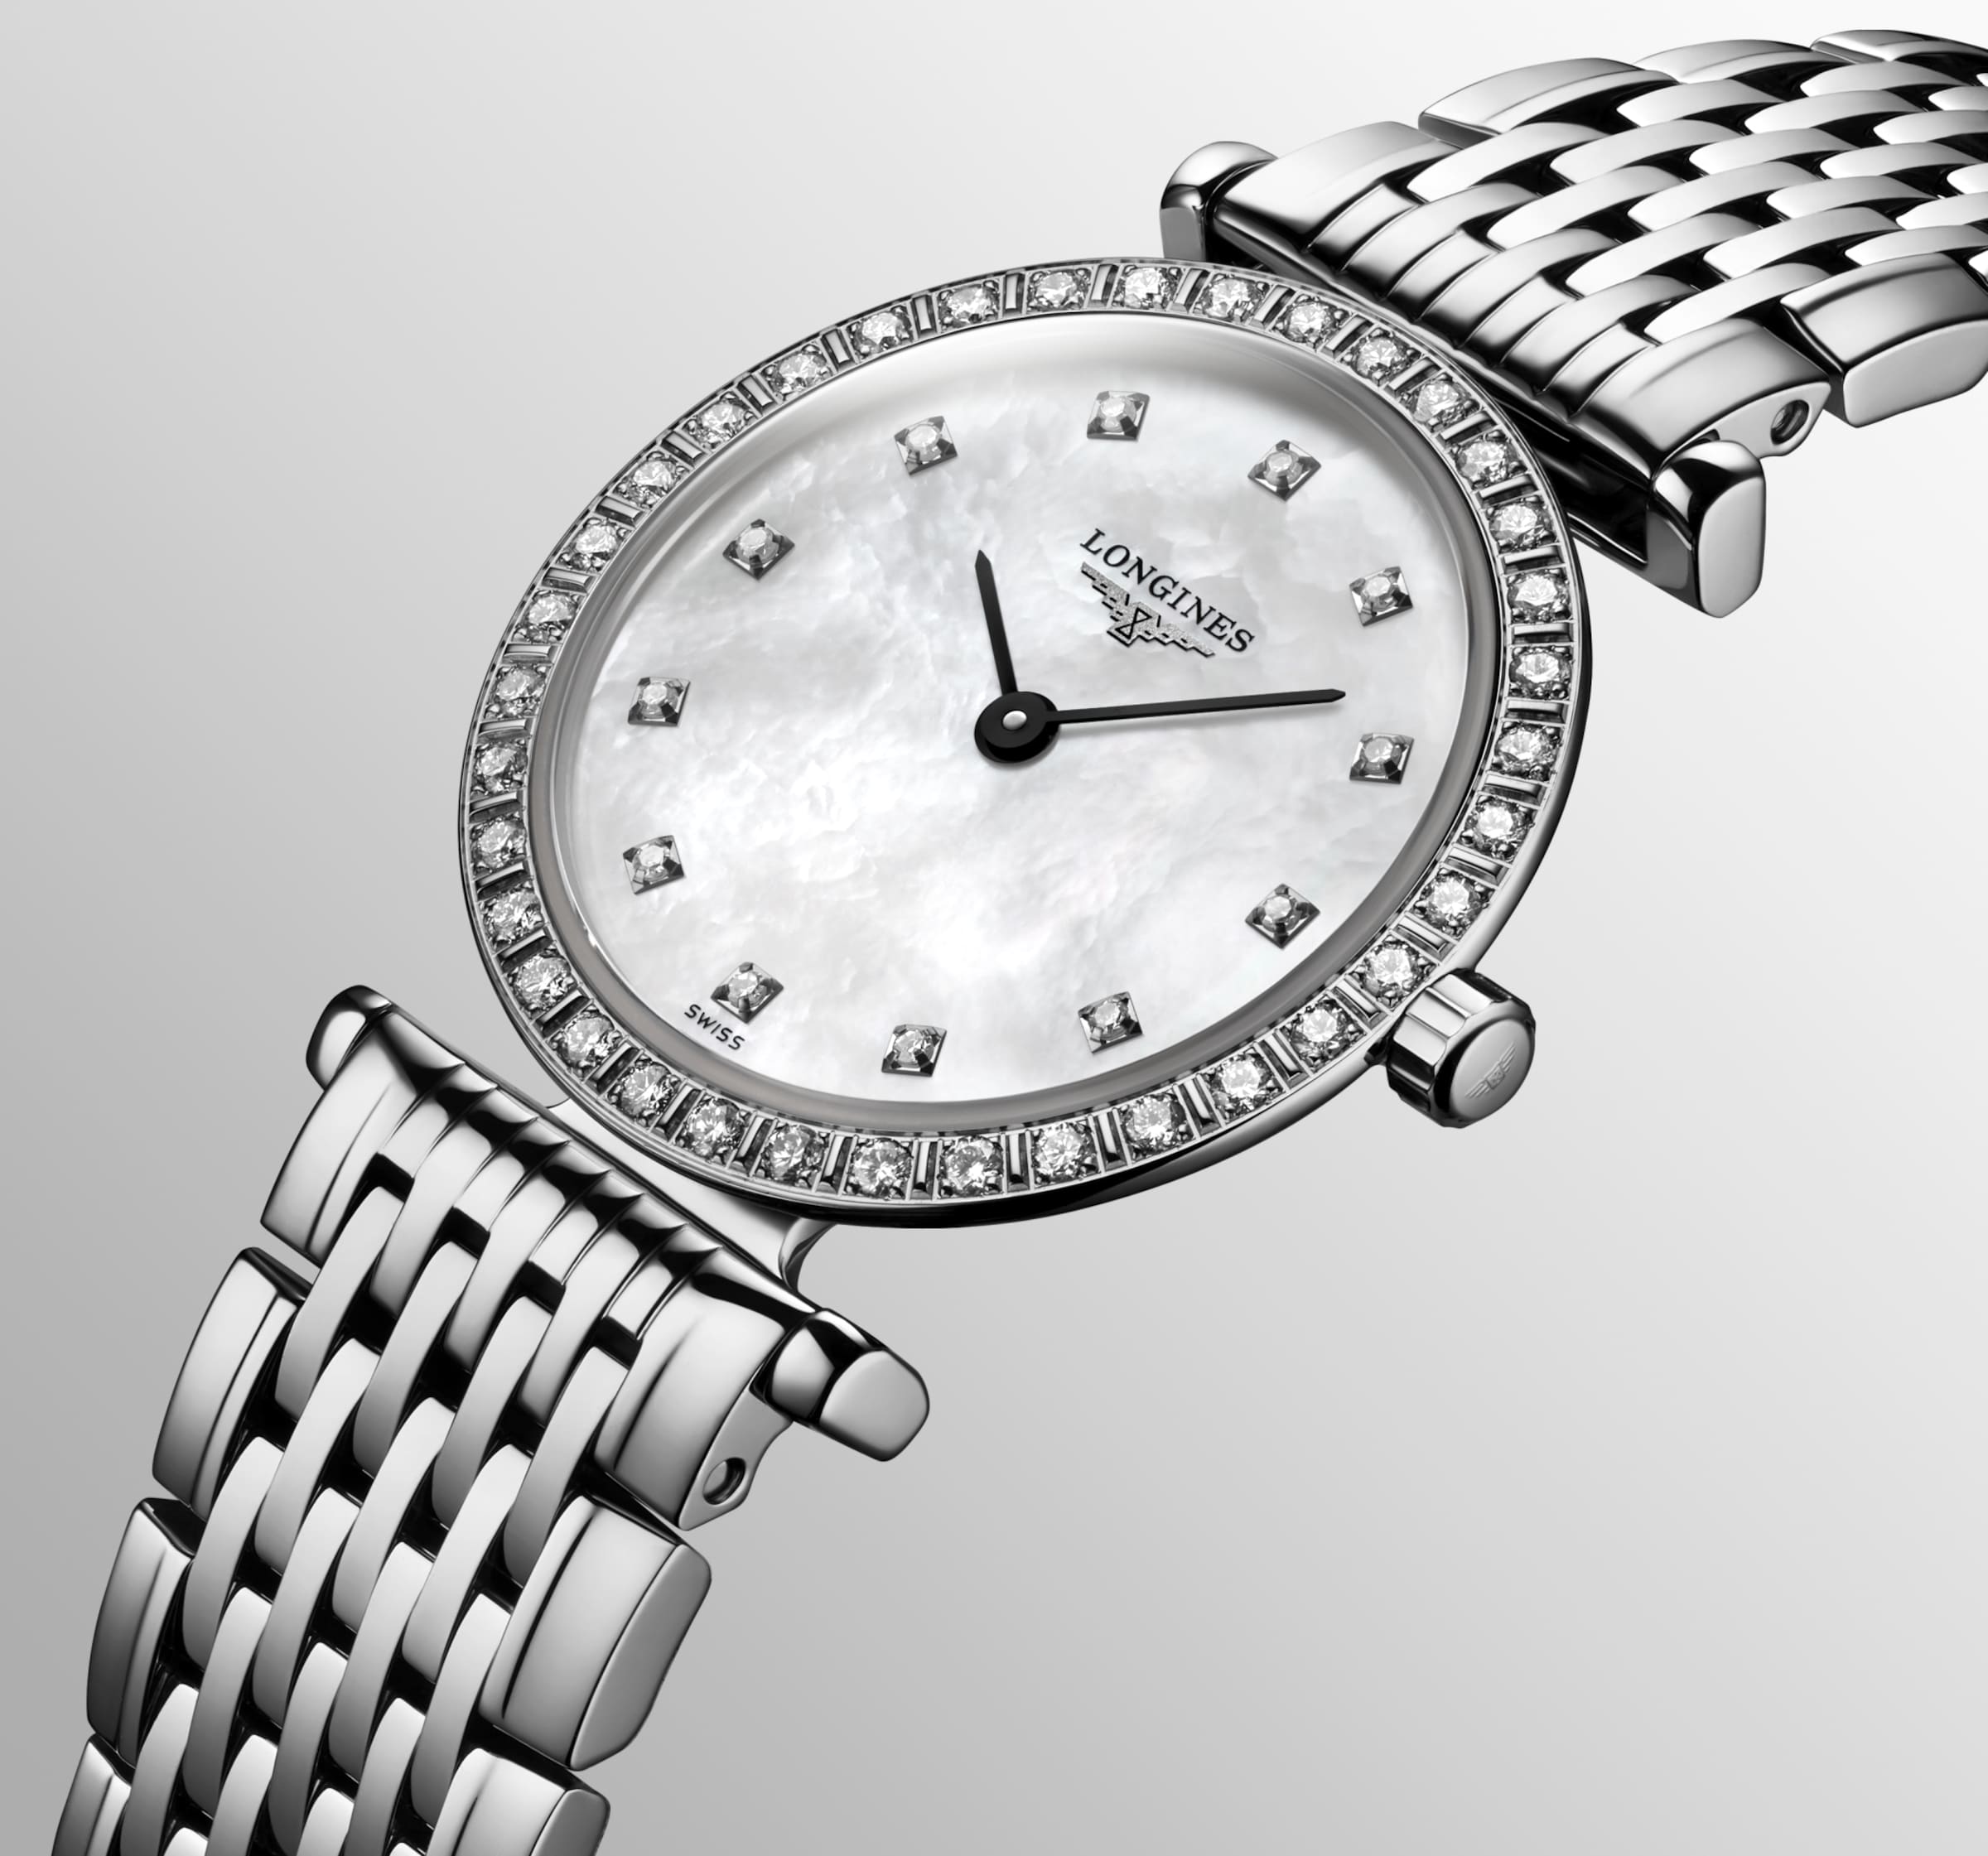 Longines LA GRANDE CLASSIQUE DE LONGINES Quartz Stainless steel Watch - L4.341.0.80.6